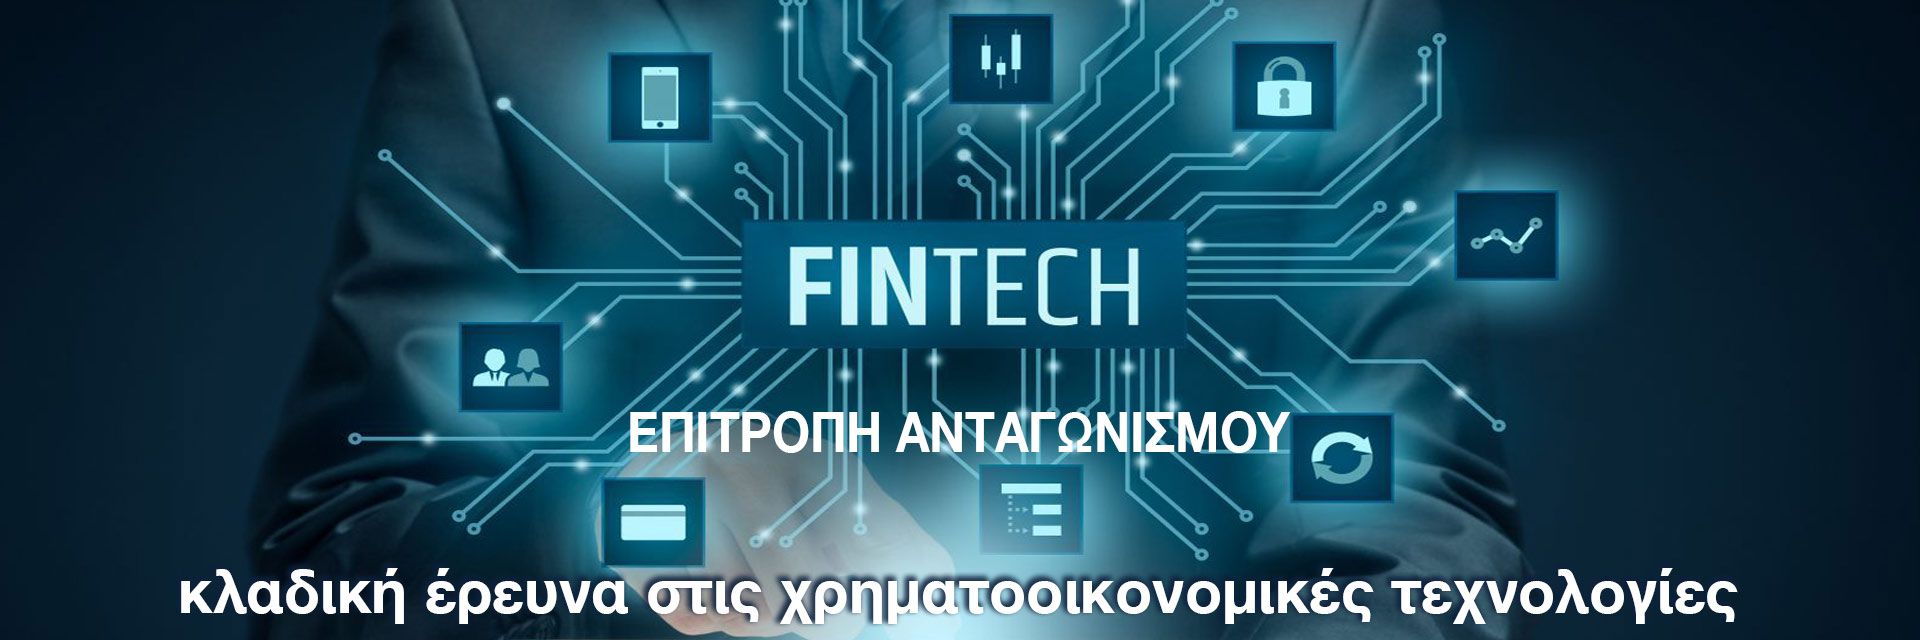 Έναρξη δημόσιας διαβούλευσης της κλαδικής έρευνας στις χρηματοοικονομικές τεχνολογίες (Fintech)